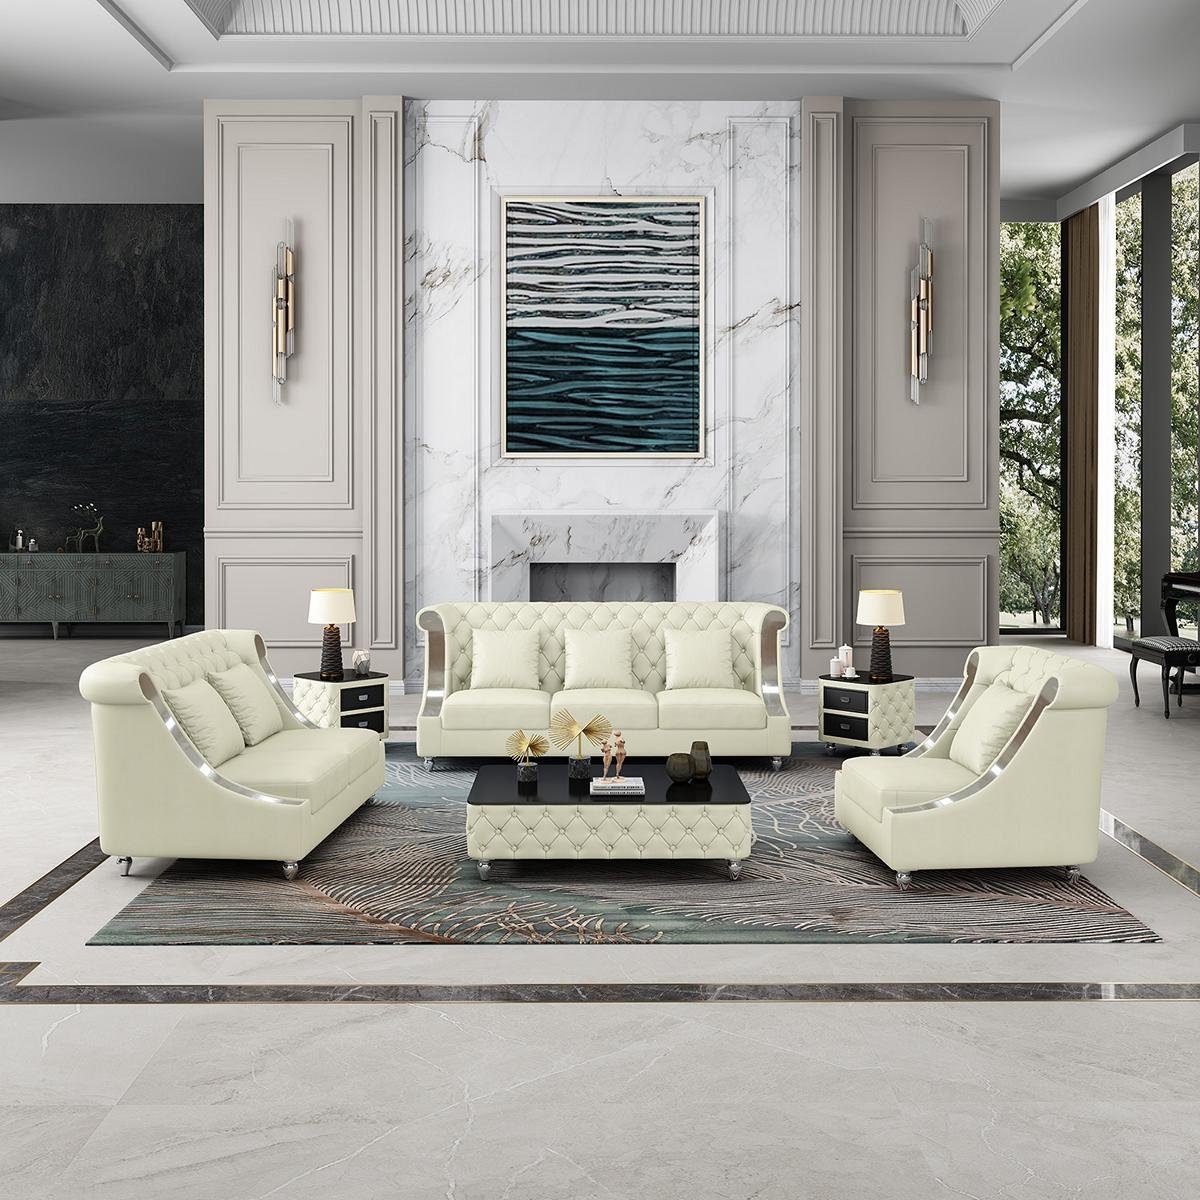 JVmoebel Wohnzimmer-Set, Sofagarnitur 3 2 1 Sitzer Set Design Sofa Polster Couchen Couch Modern Weiß